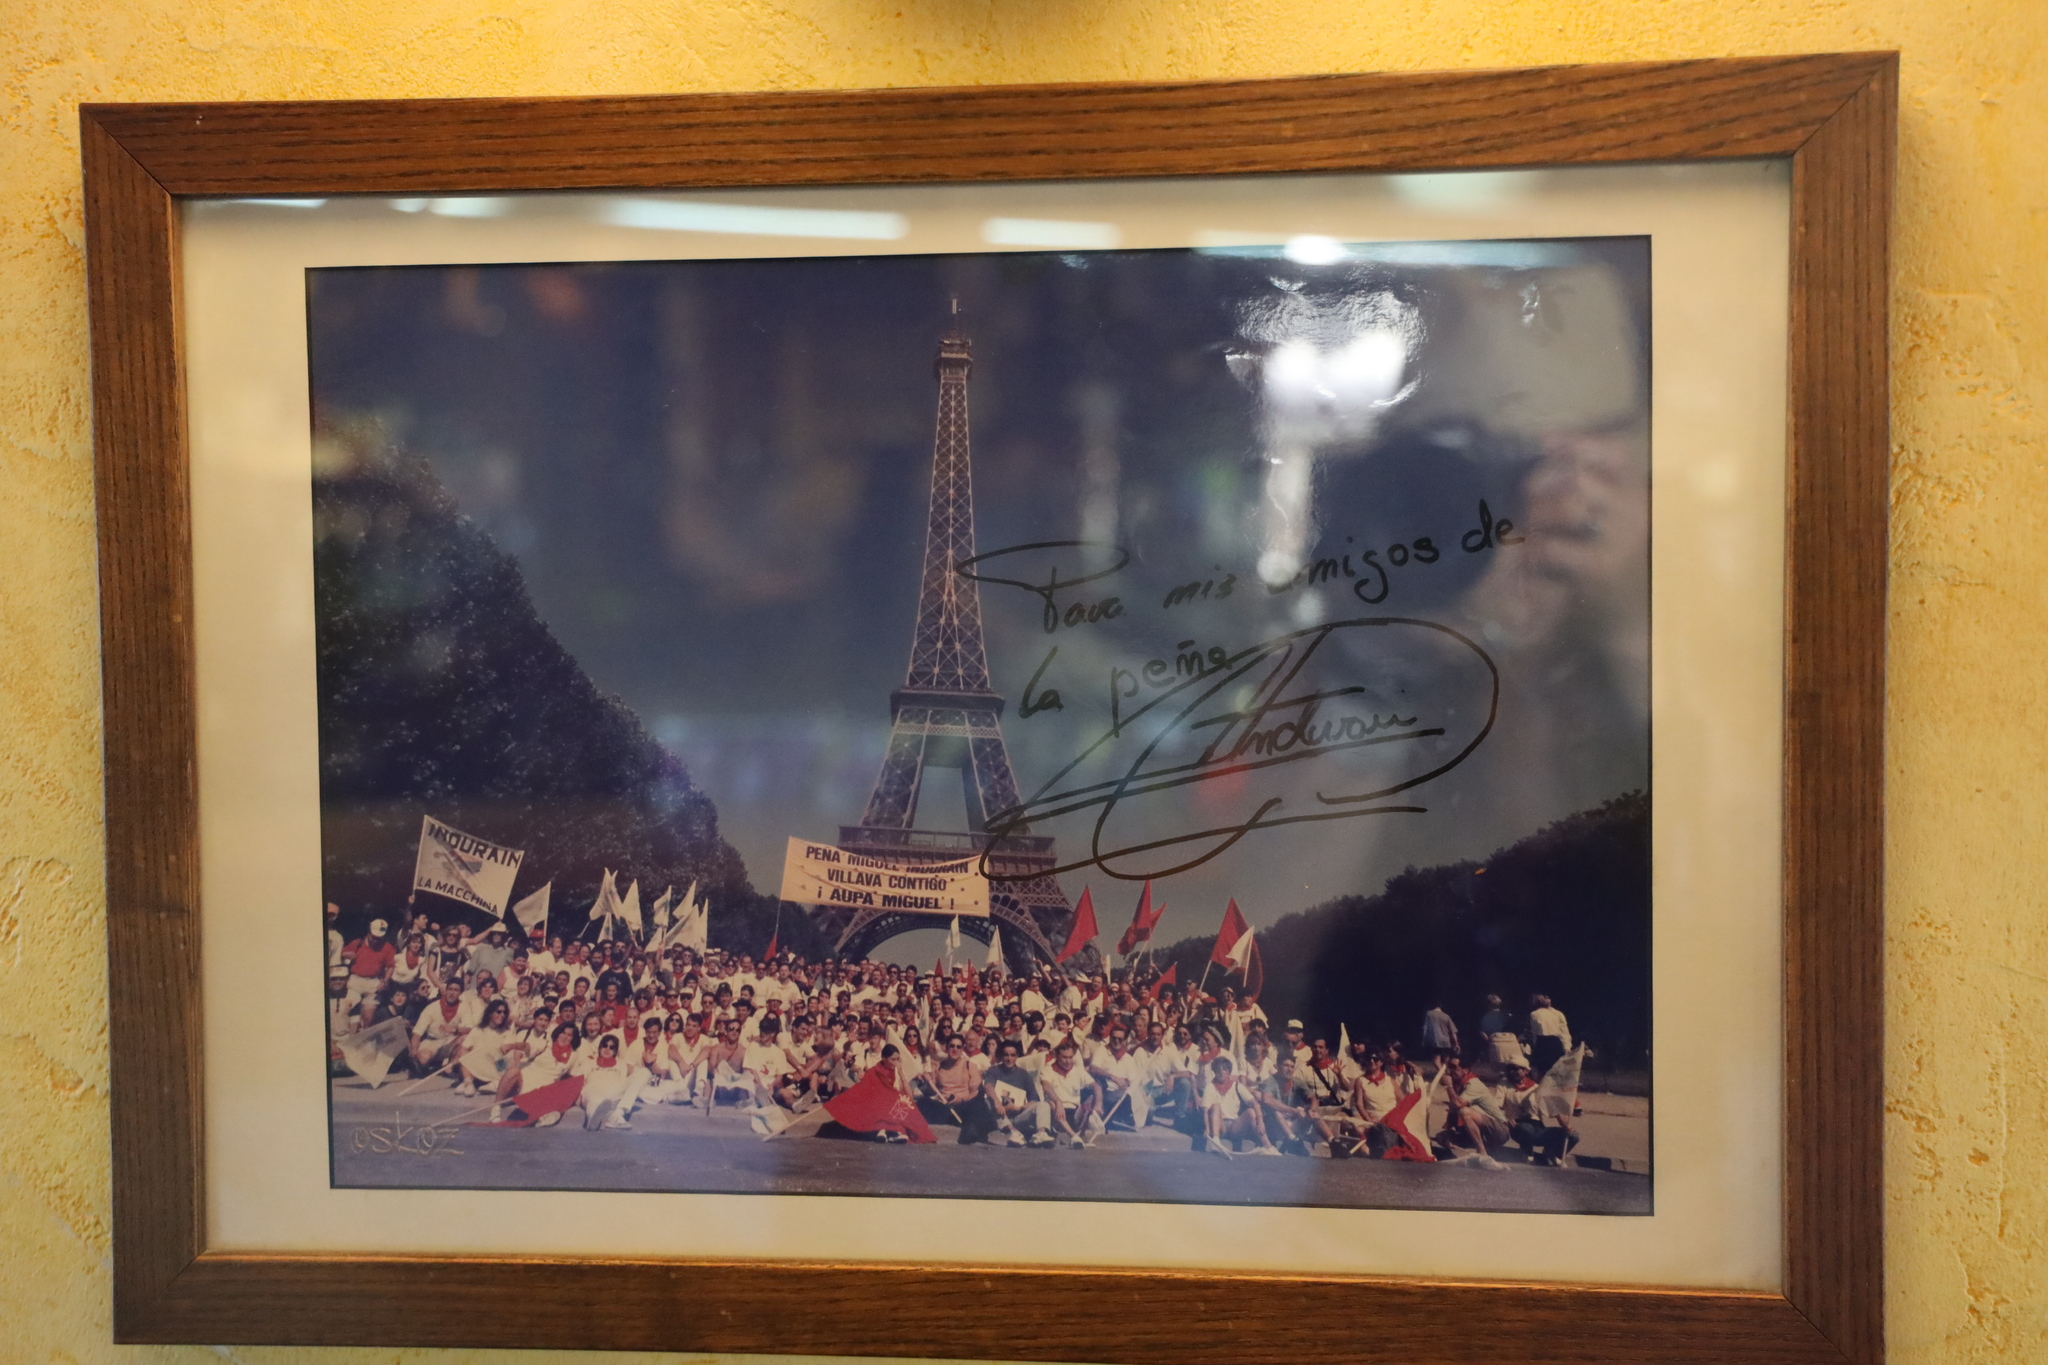 Desplazamiento de la peña Miguel Indurain a París